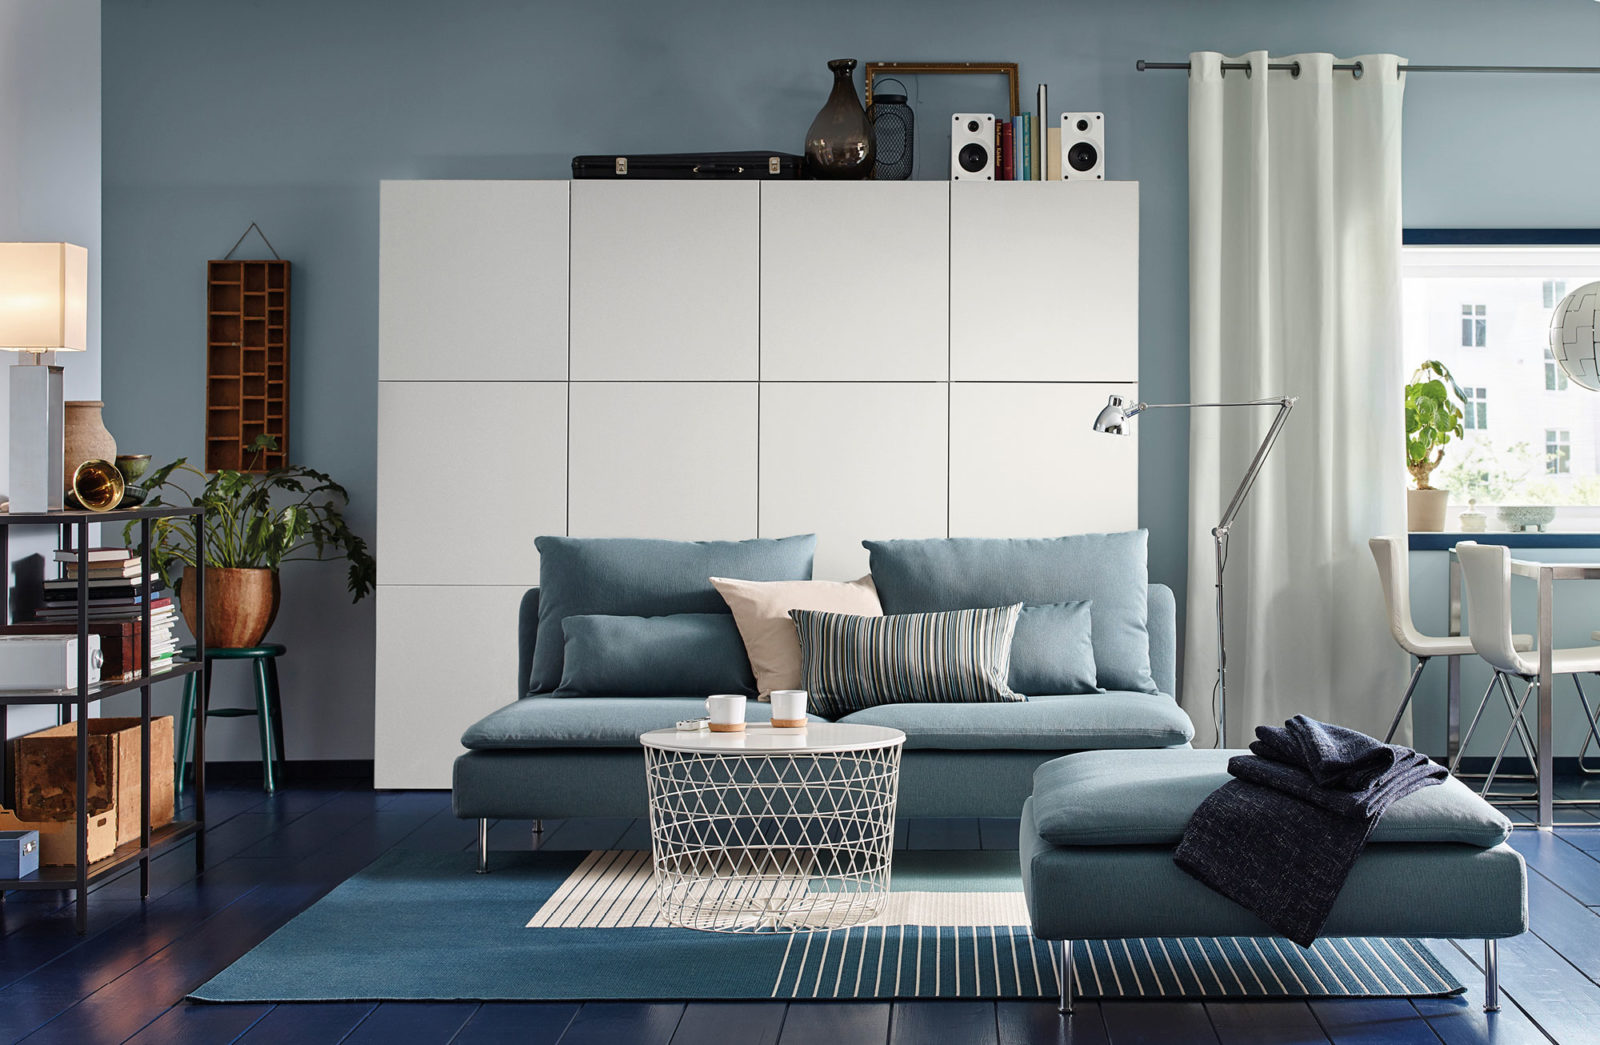 Vardagsrum i modern stil i blå och vita toner med mörkblått trägolv, blå soffa, vita bord och skåp.